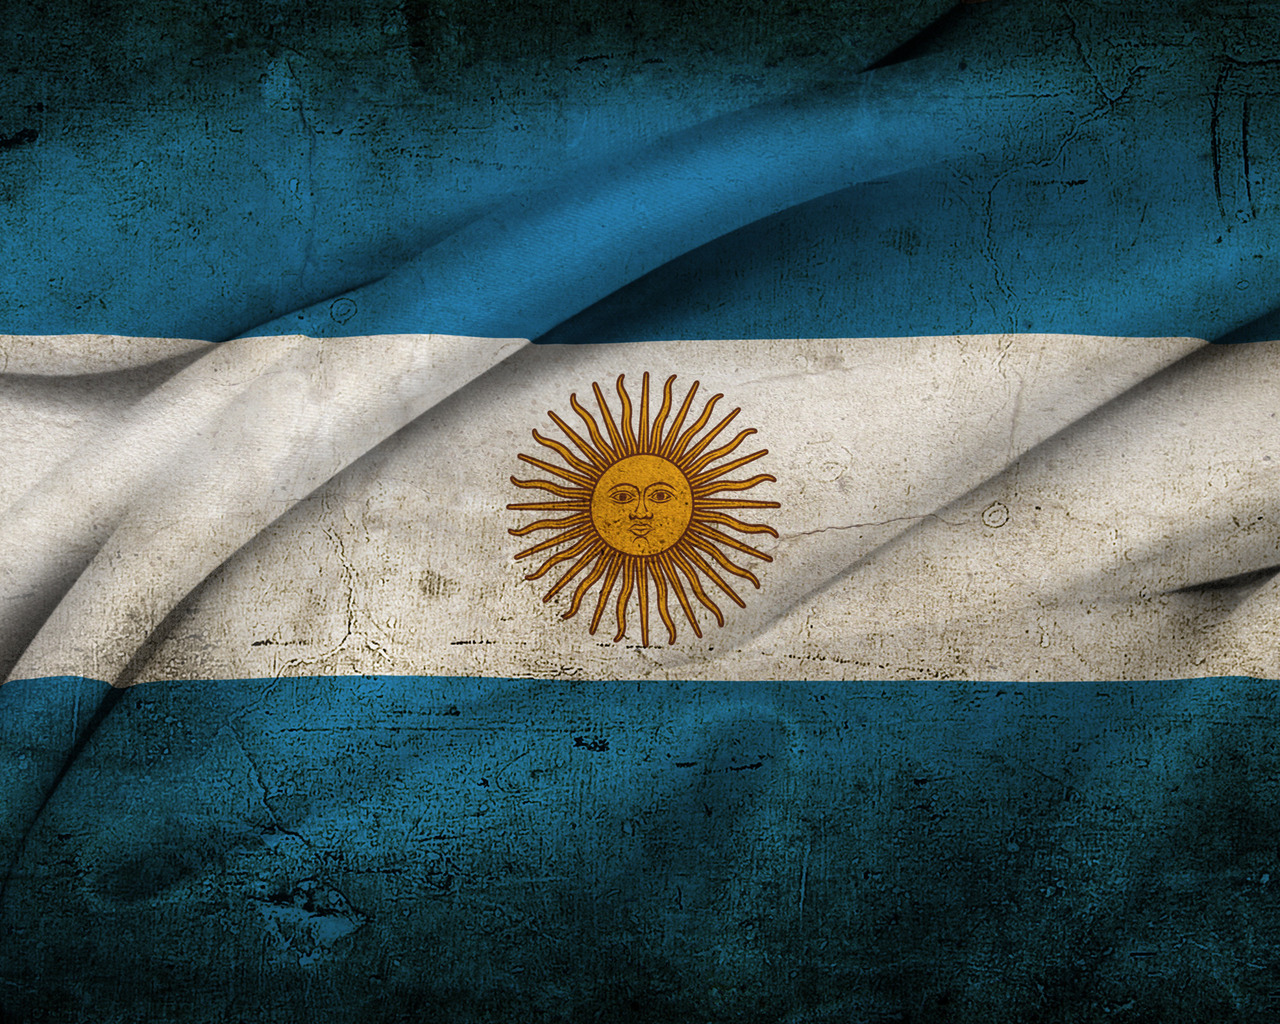 флаг Аргентины